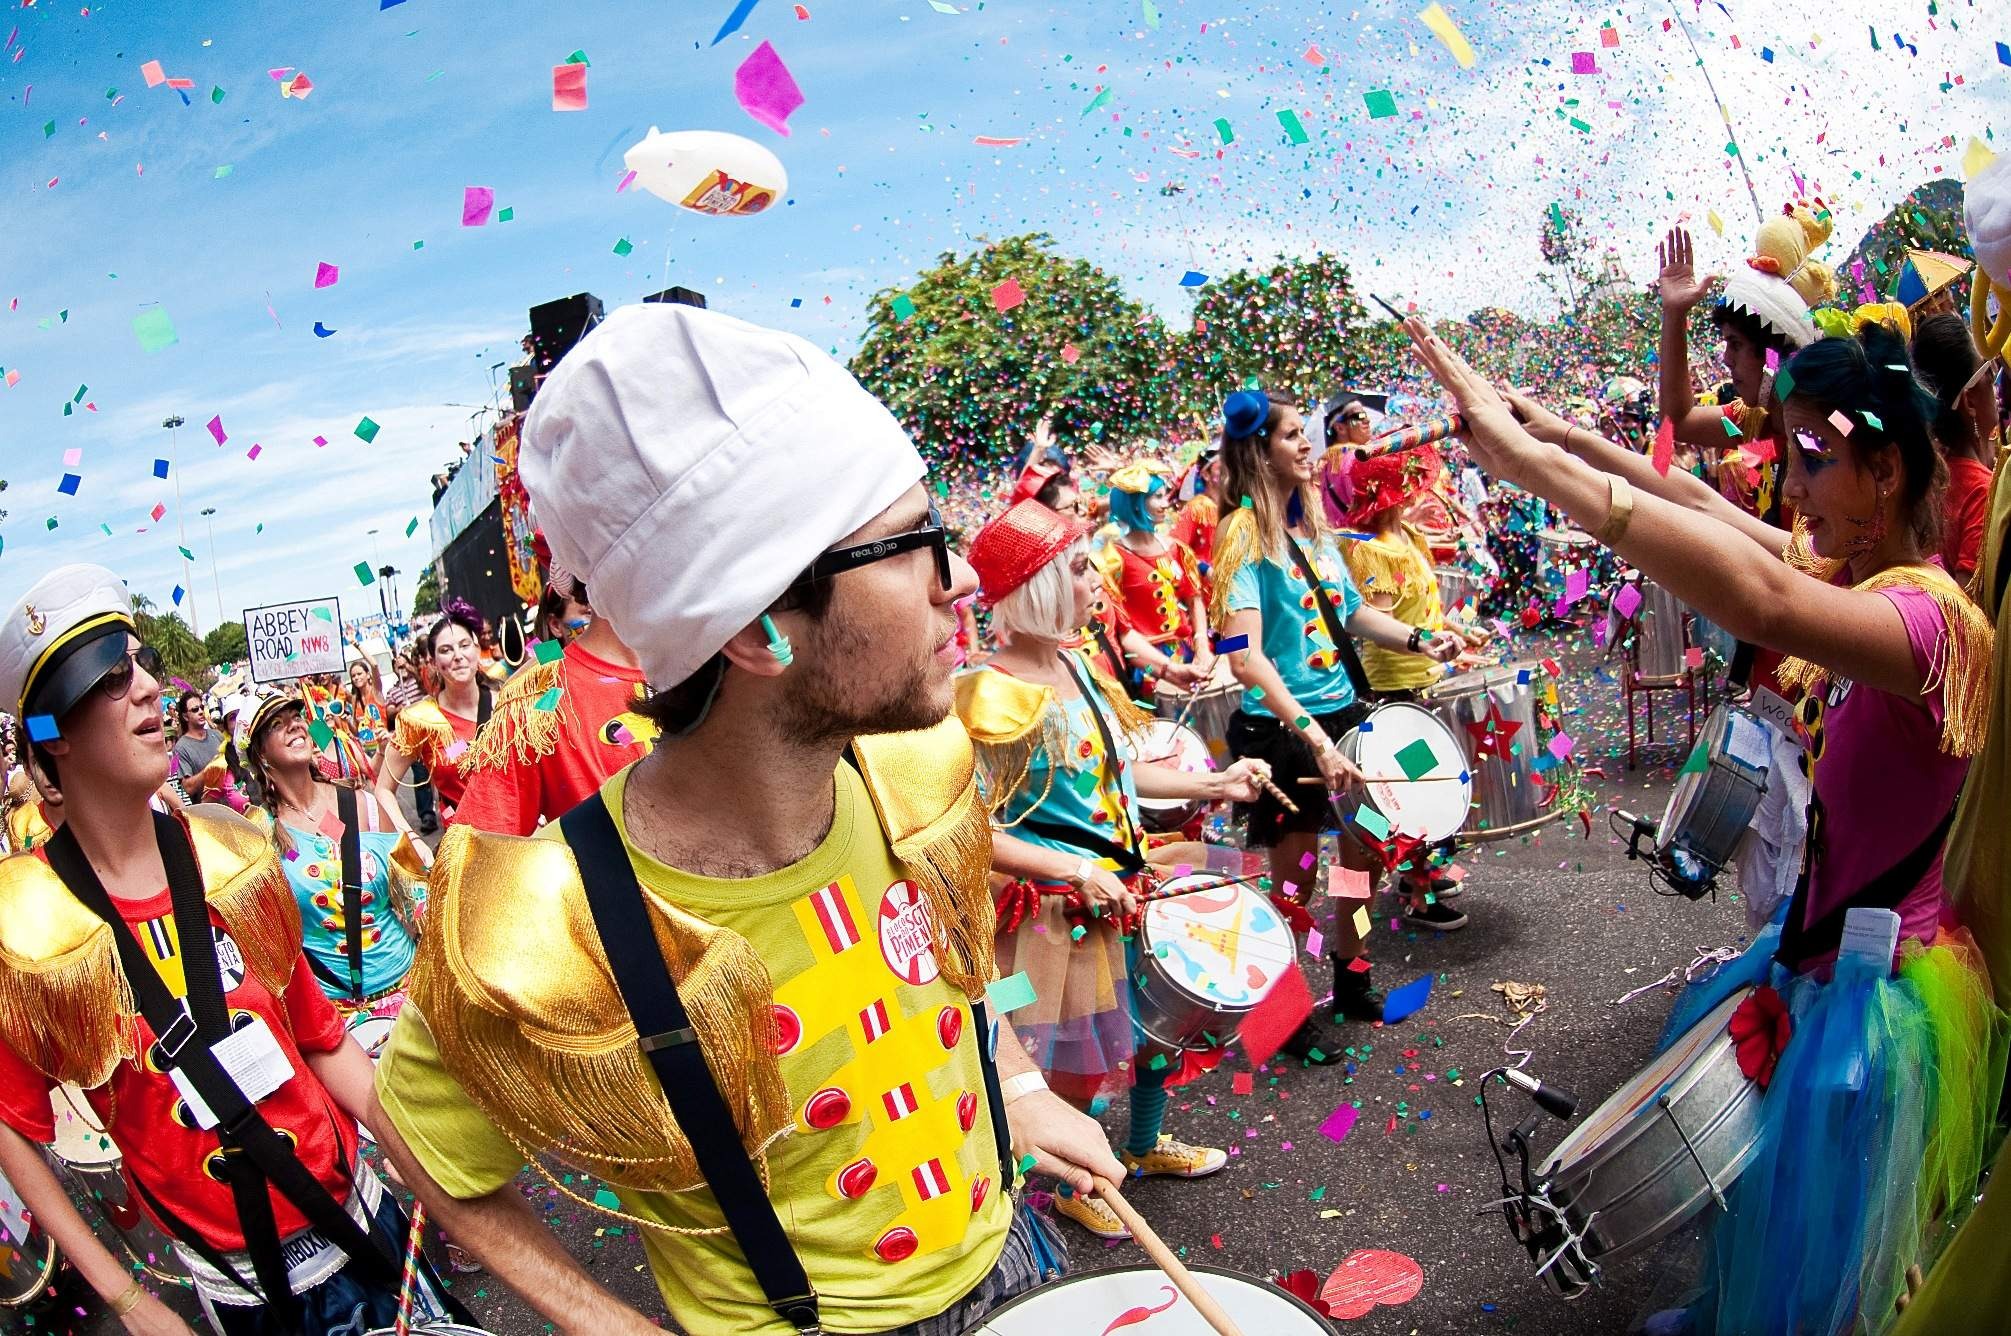 Folia com saúde: pular carnaval pode gastar até 800 calorias. Veja dicas!